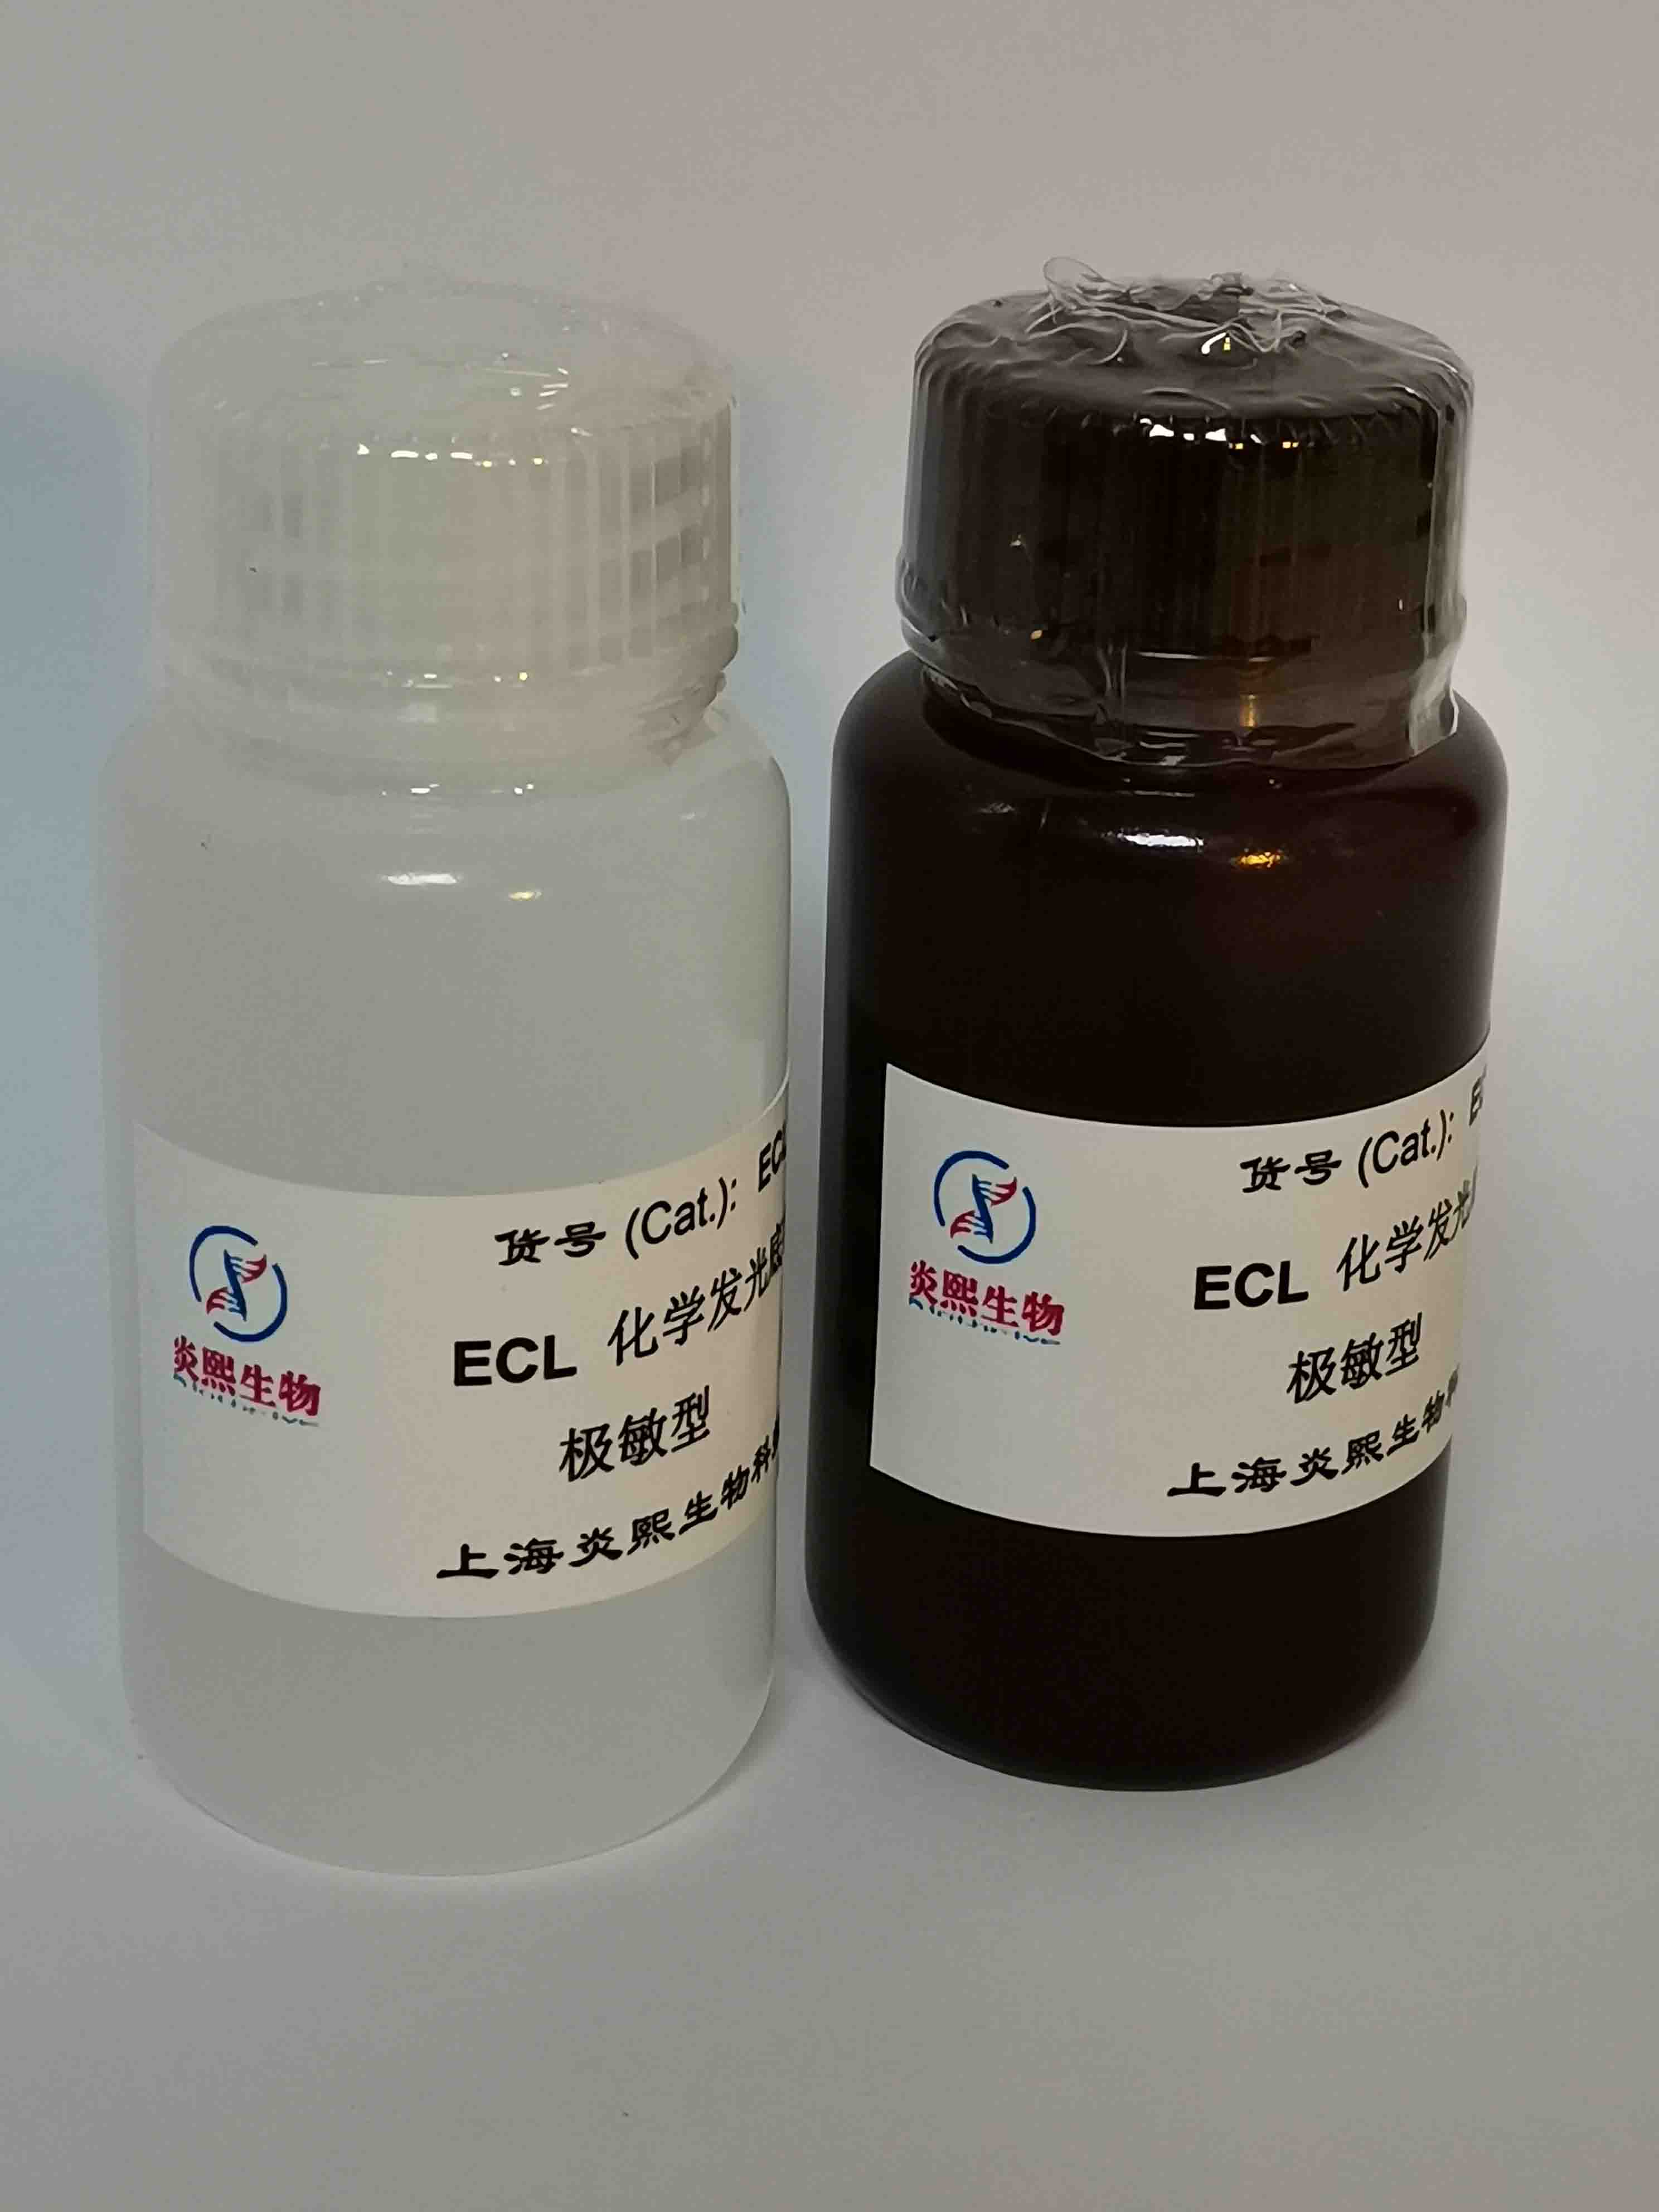 极敏型 ECL化学发光底物试剂盒极敏型 ECL化学发光底物试剂盒